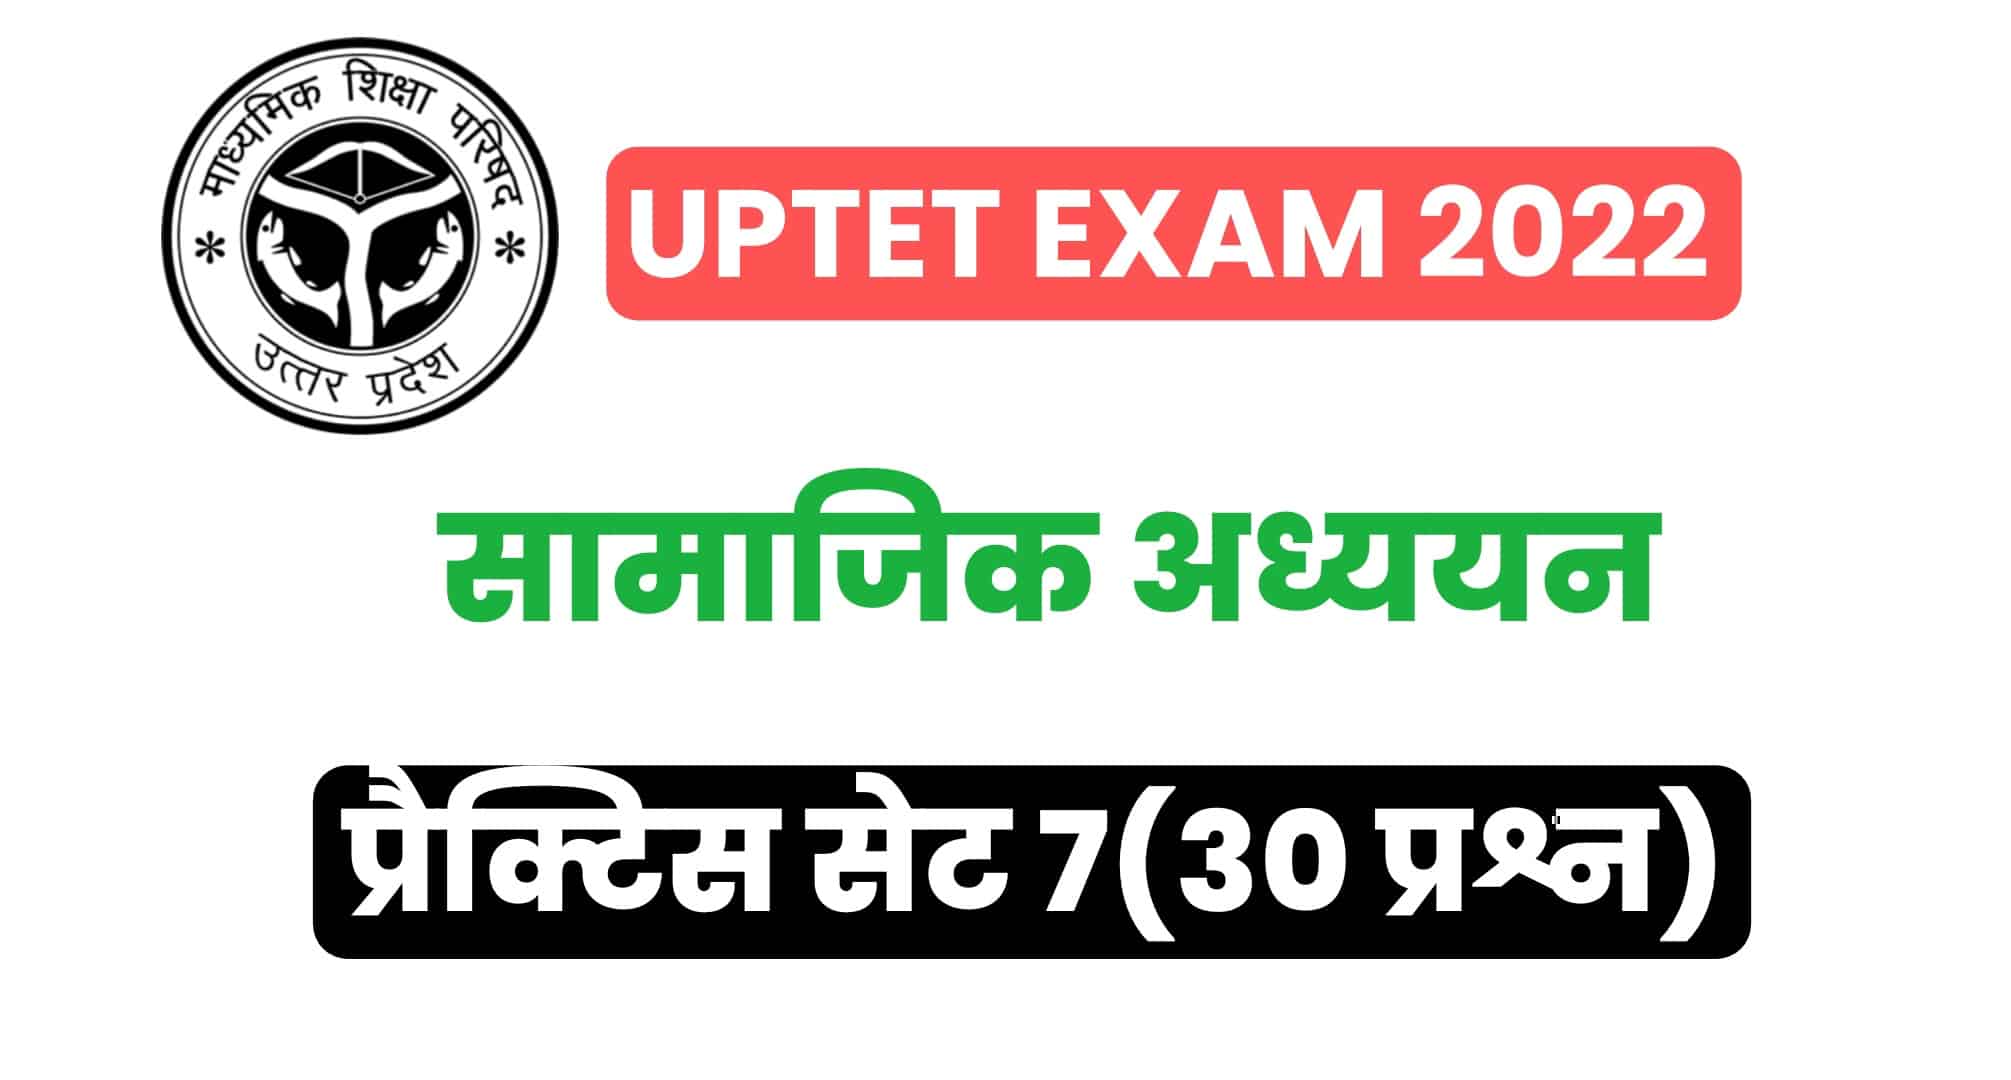 UPTET Exam 2022 : परीक्षा में पूछे गये सामाजिक अध्ययन के महत्वपूर्ण प्रश्न, देखें